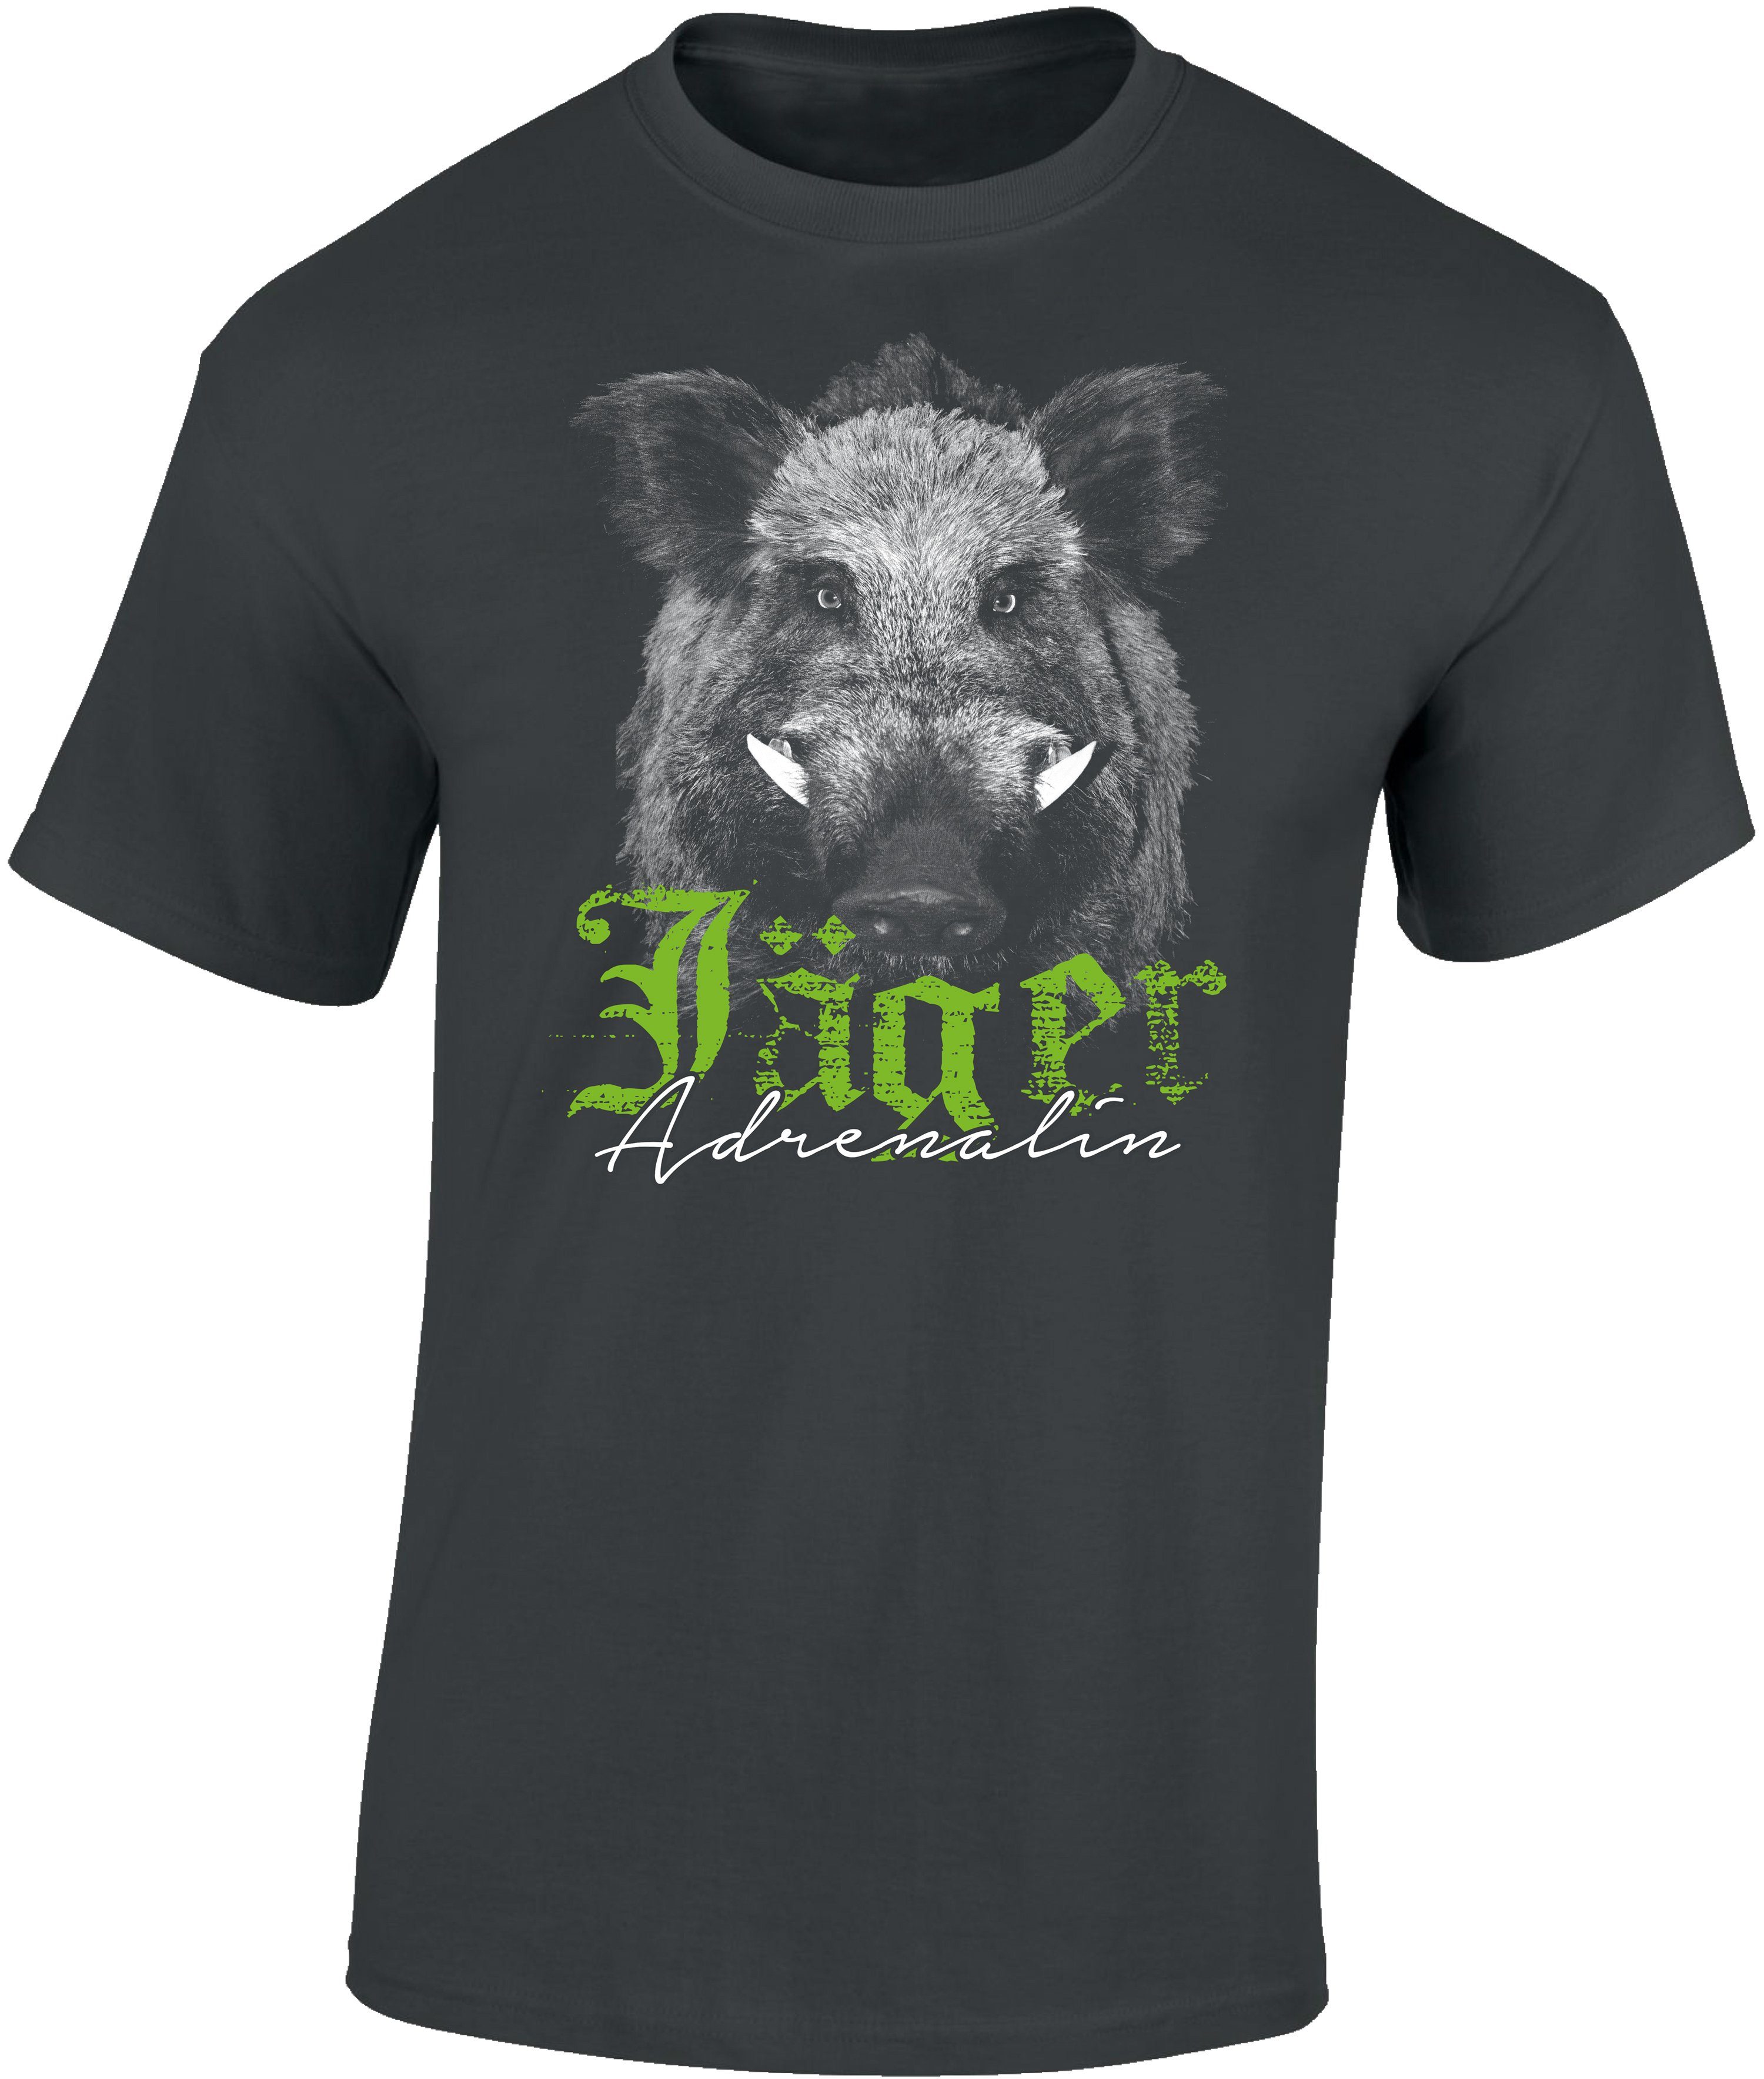 Baddery Print-Shirt Jäger T-Shirt - Jäger Adrenalin - Geschenk für Jäger - Jagd Tshirt, hochwertiger Siebdruck, auch Übergrößen, aus Baumwolle